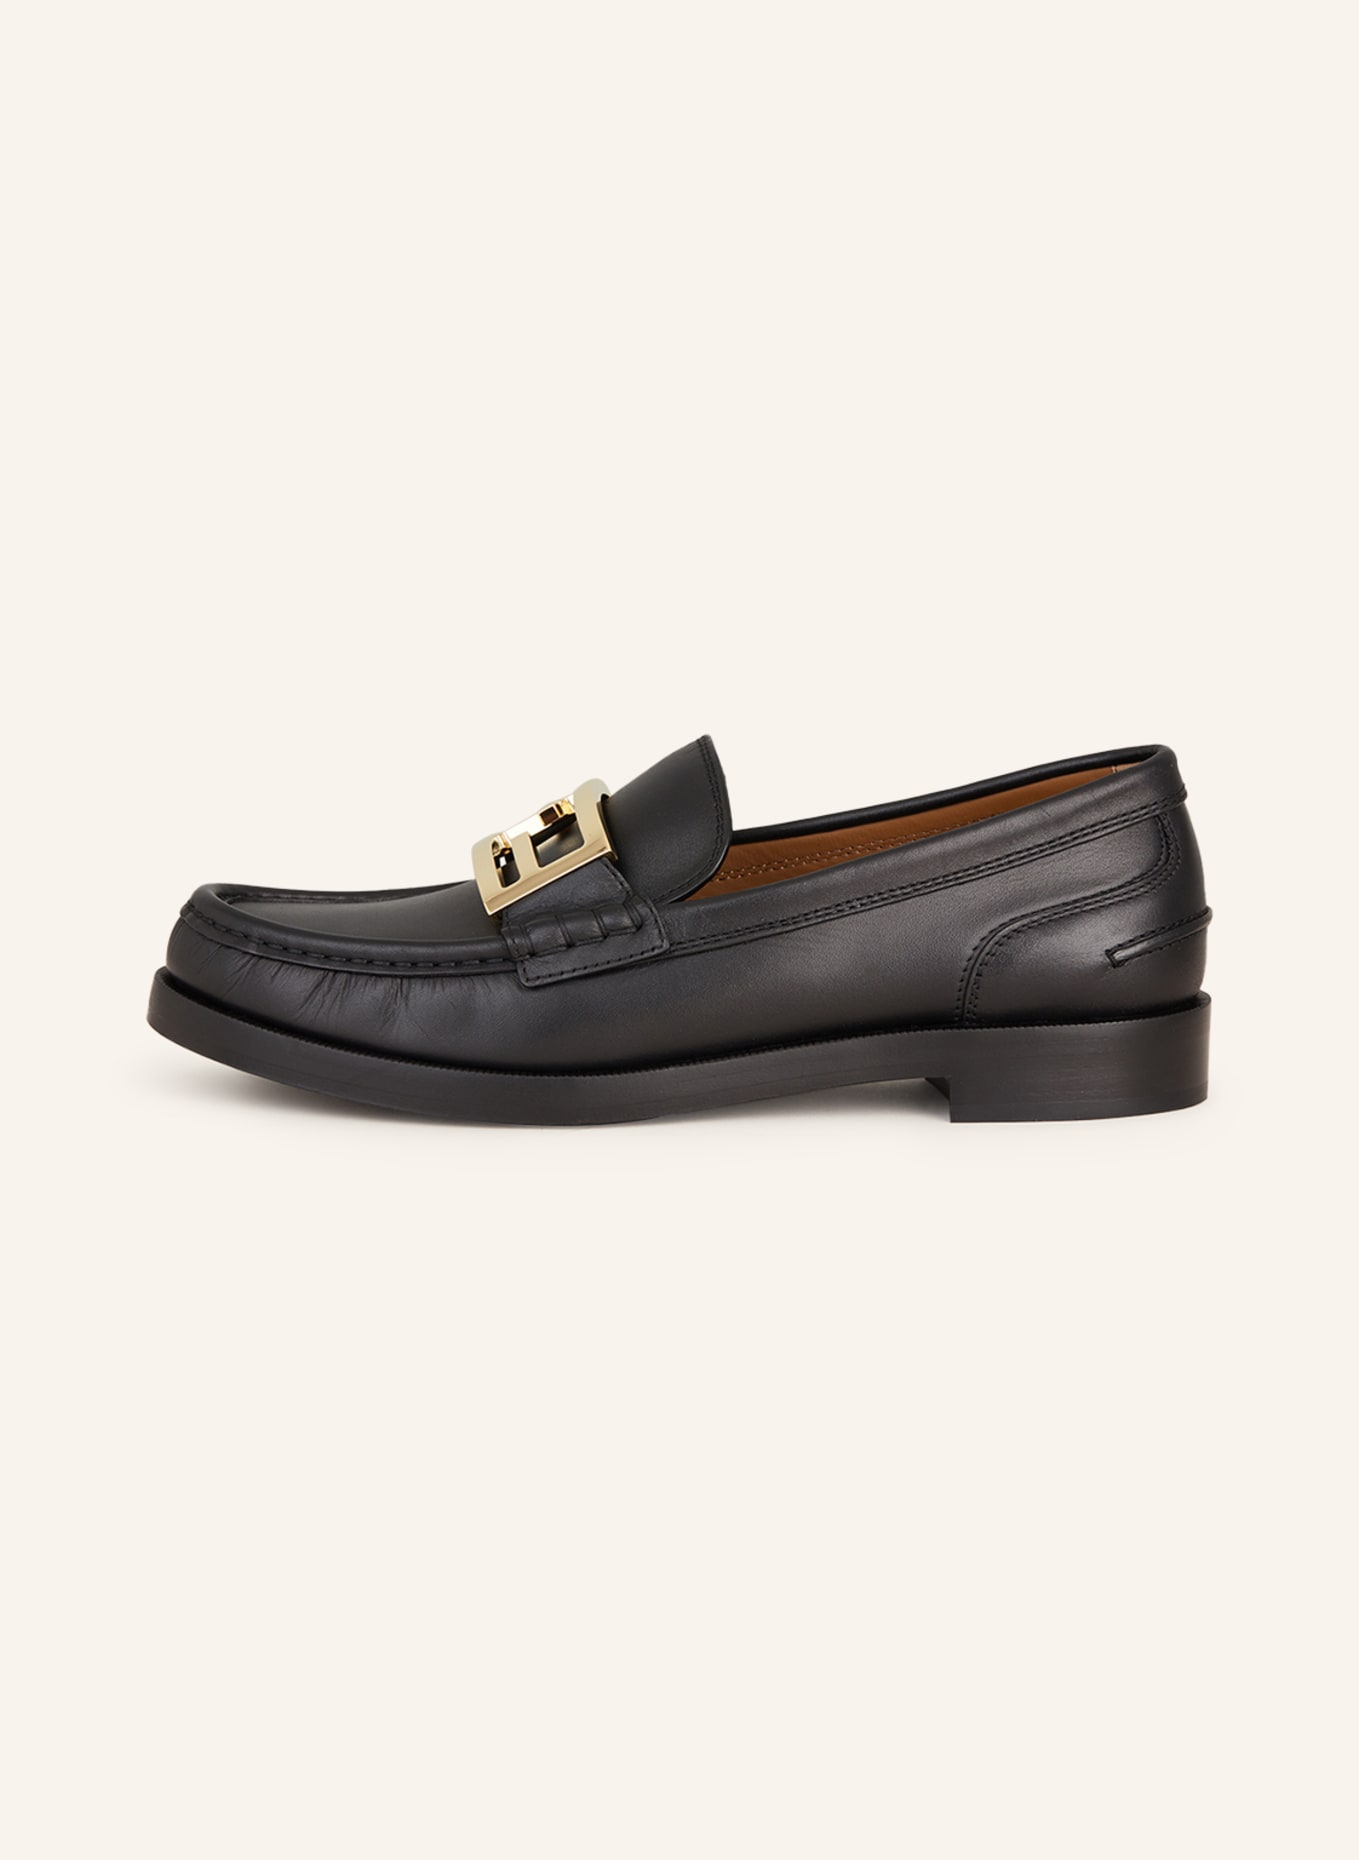 FENDI Loafers, Color: BLACK (Image 4)